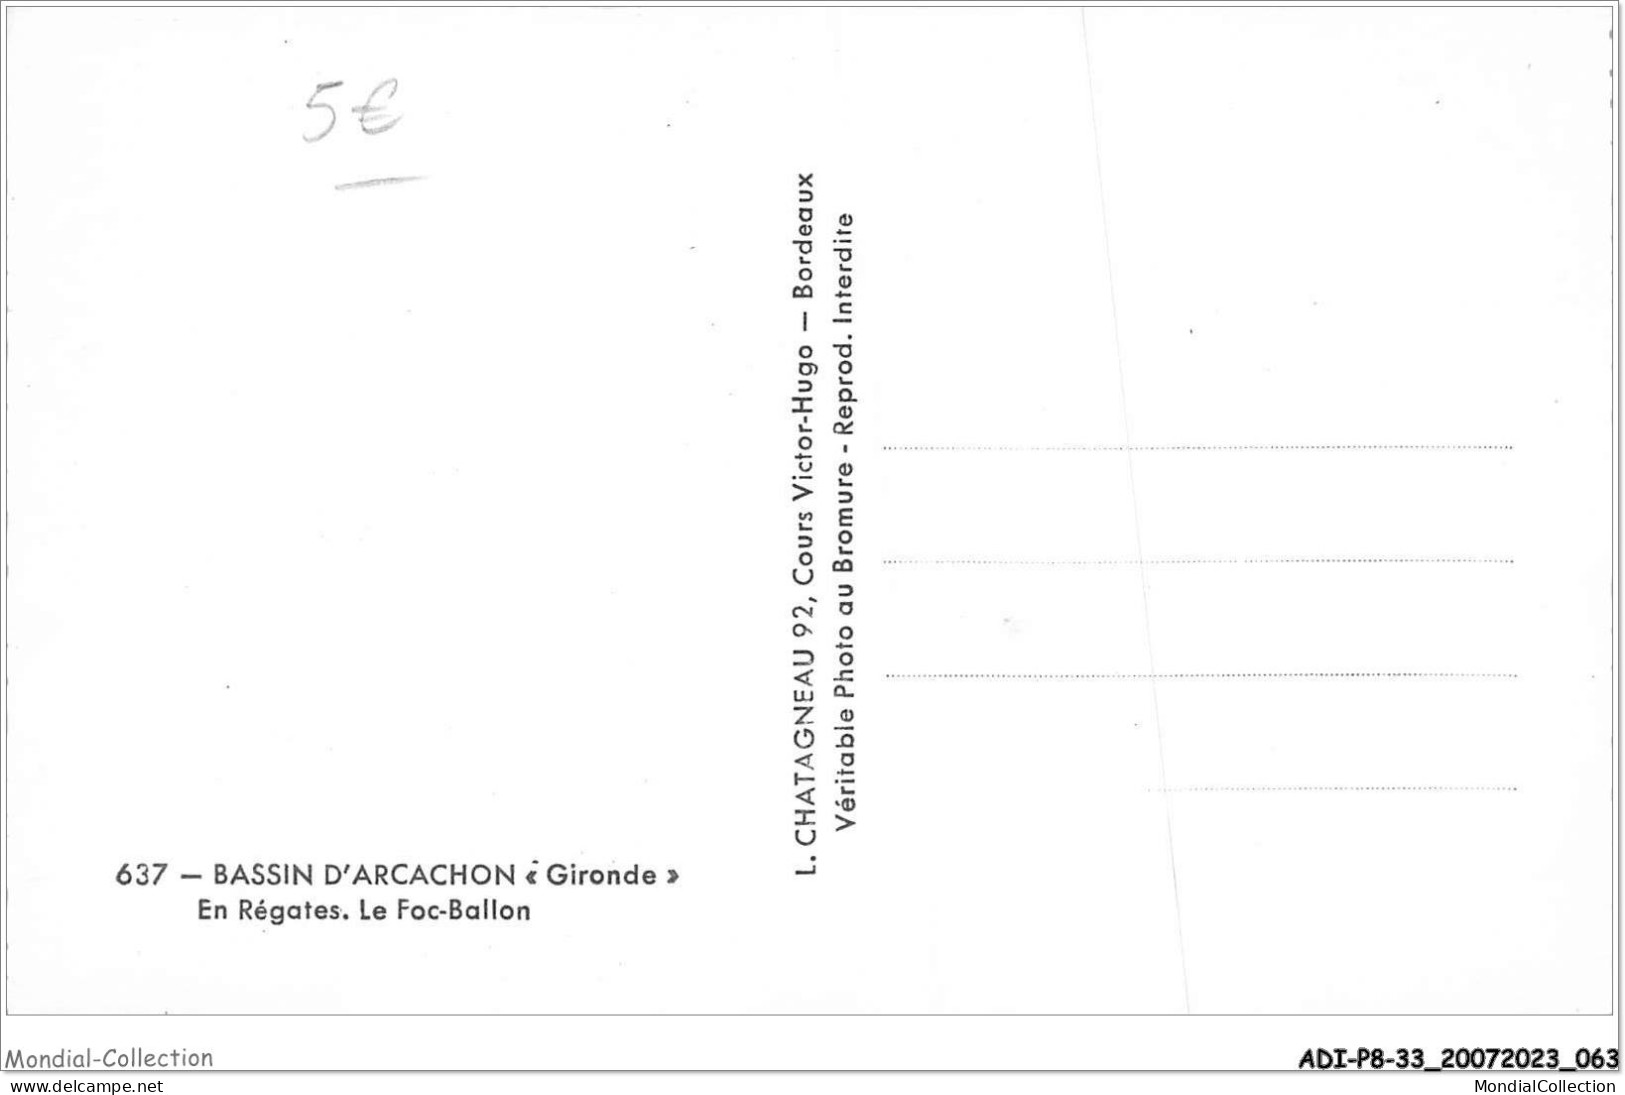 ADIP8-33-0670 - BASSIN D'ARCACHON - En Régates Le Foc-ballon  - Arcachon